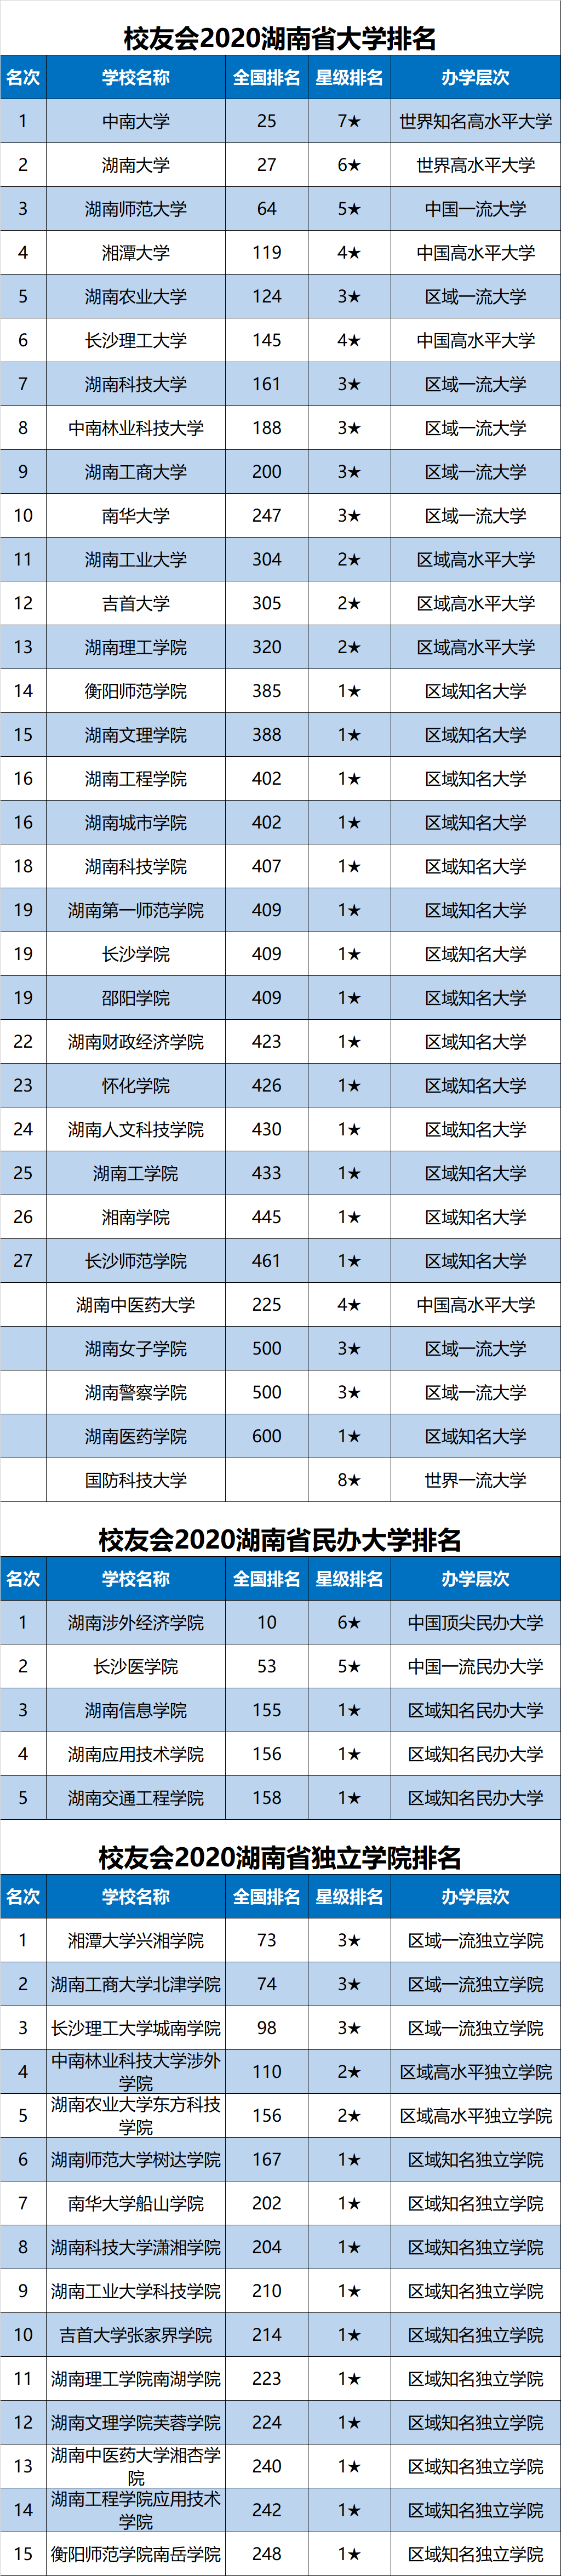 全国大学排名50强20_最新发布2020年中国最好大学排名,2020年中国最好大学